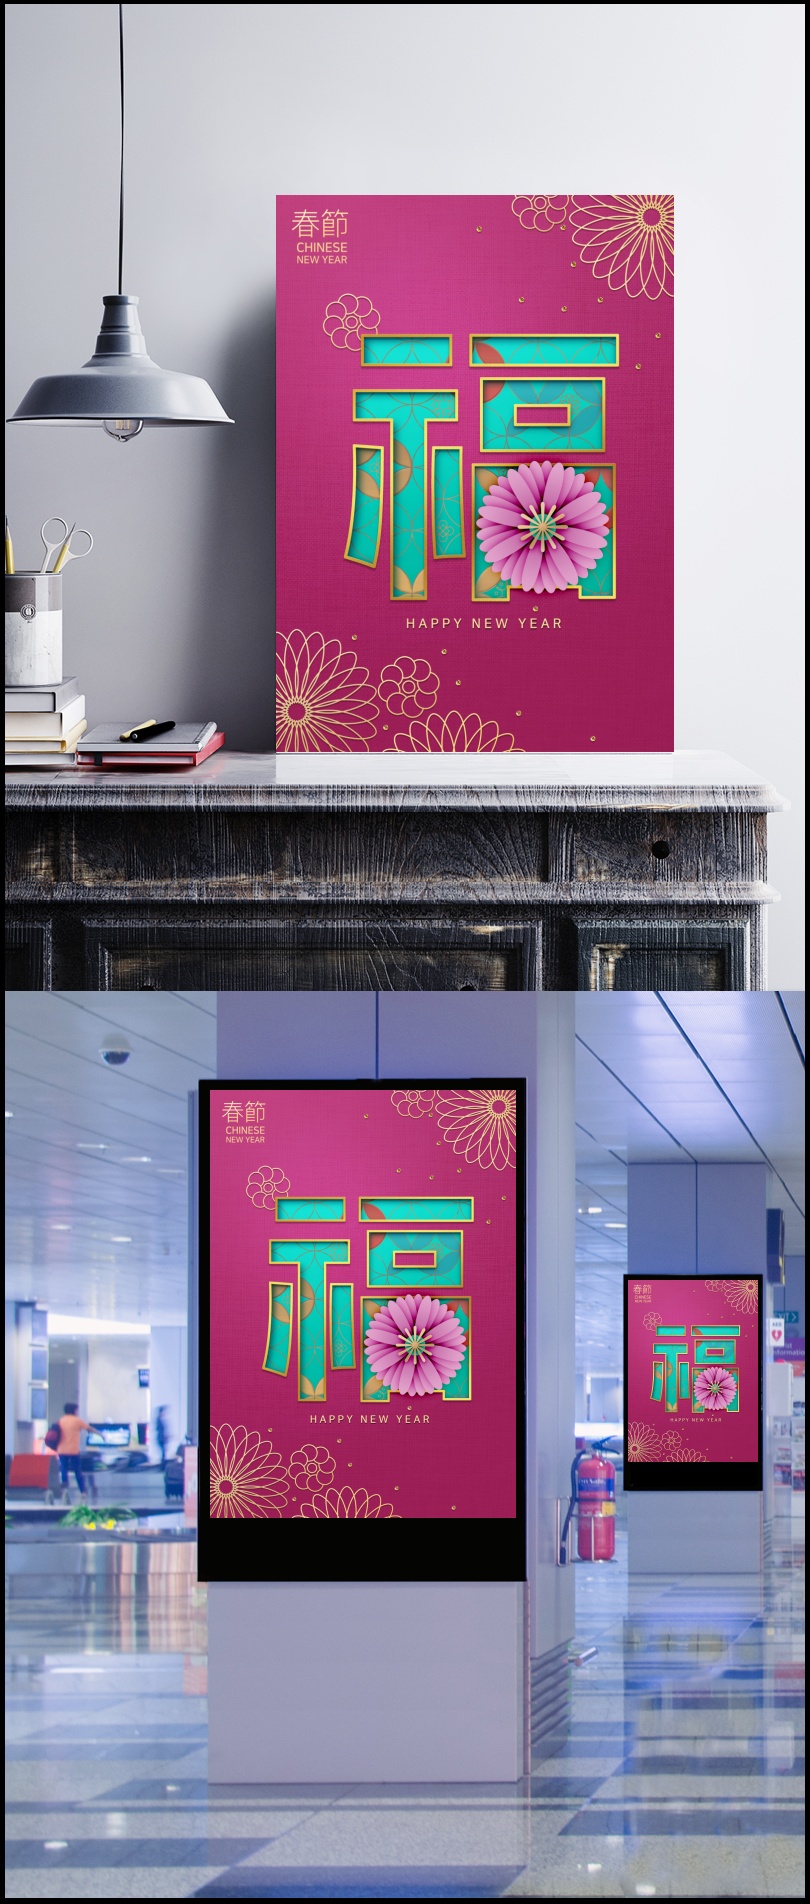 传统中式装饰花纹图案福字春节新年海报ps素材